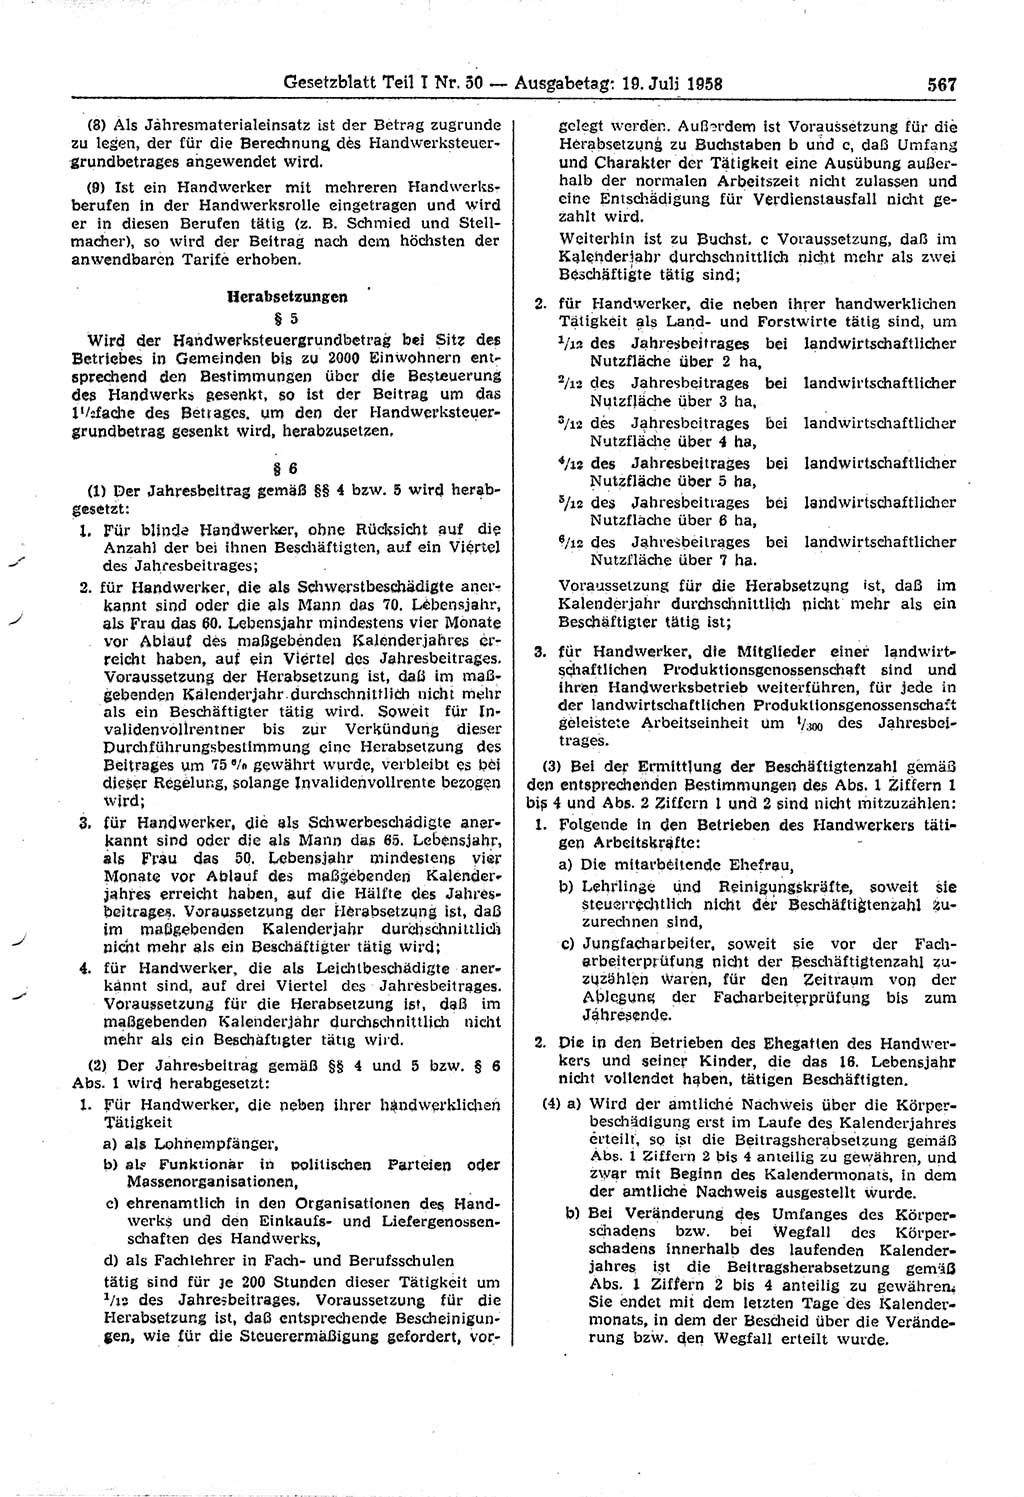 Gesetzblatt (GBl.) der Deutschen Demokratischen Republik (DDR) Teil Ⅰ 1958, Seite 567 (GBl. DDR Ⅰ 1958, S. 567)